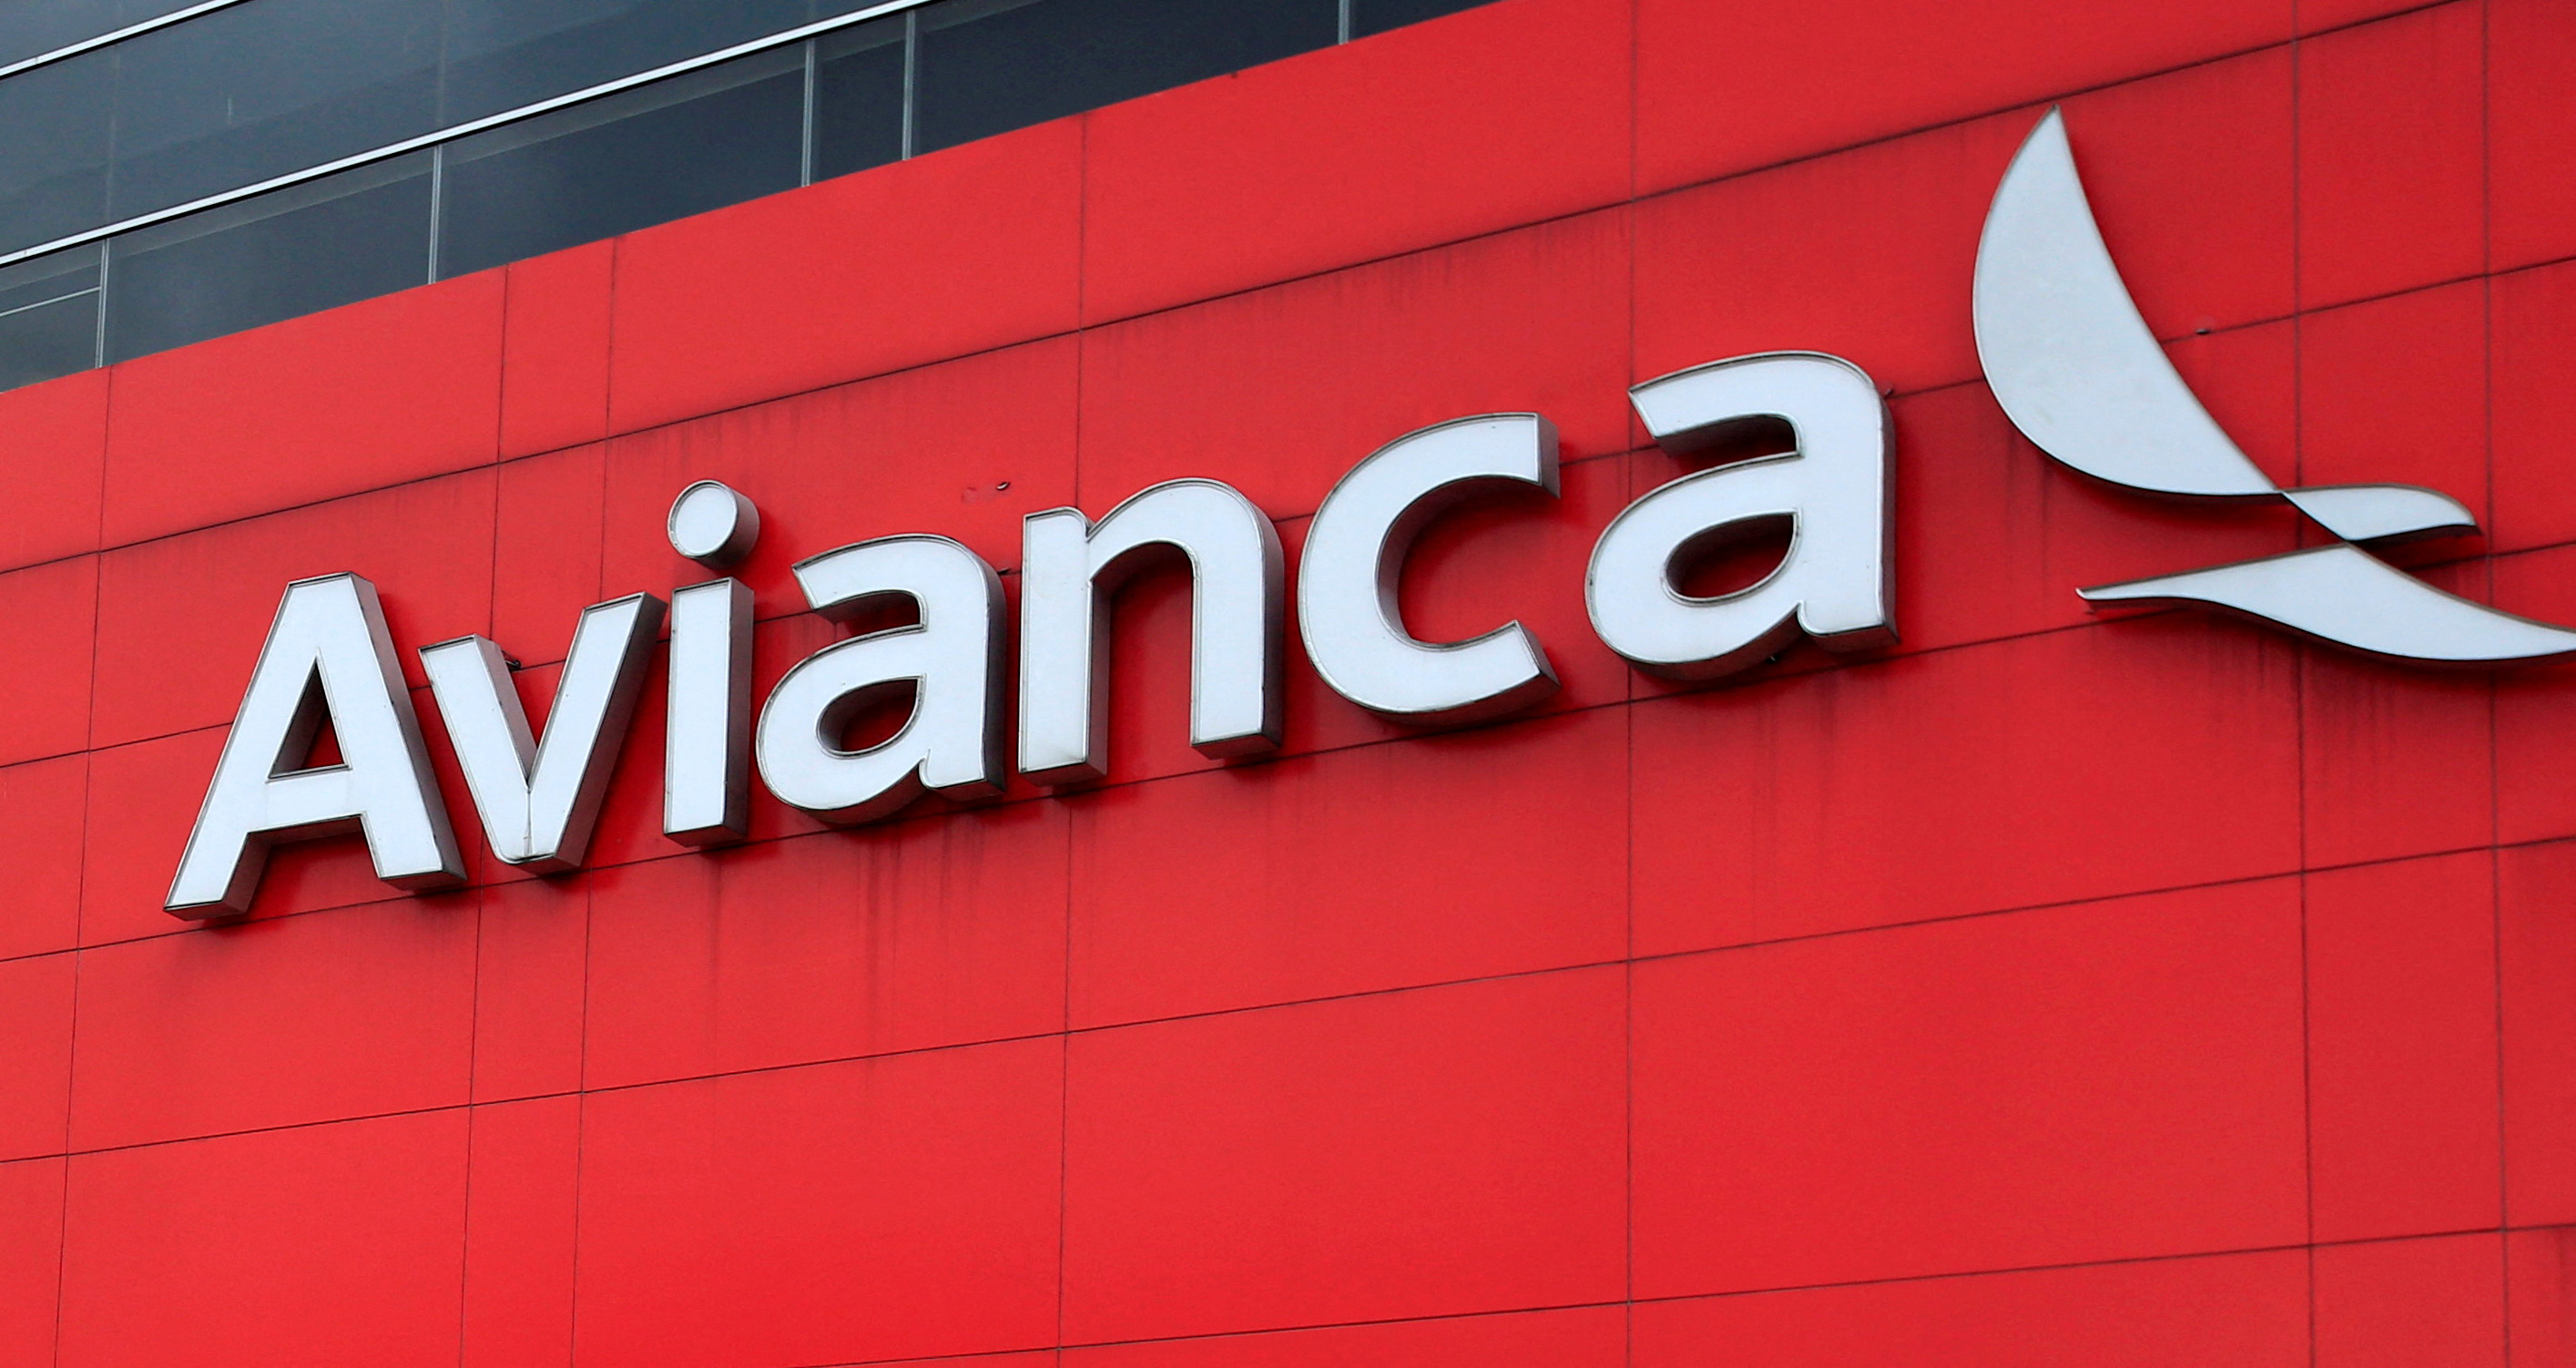 La compañía pagó una millonada para adquirir Viva Air, dinero que perderá.